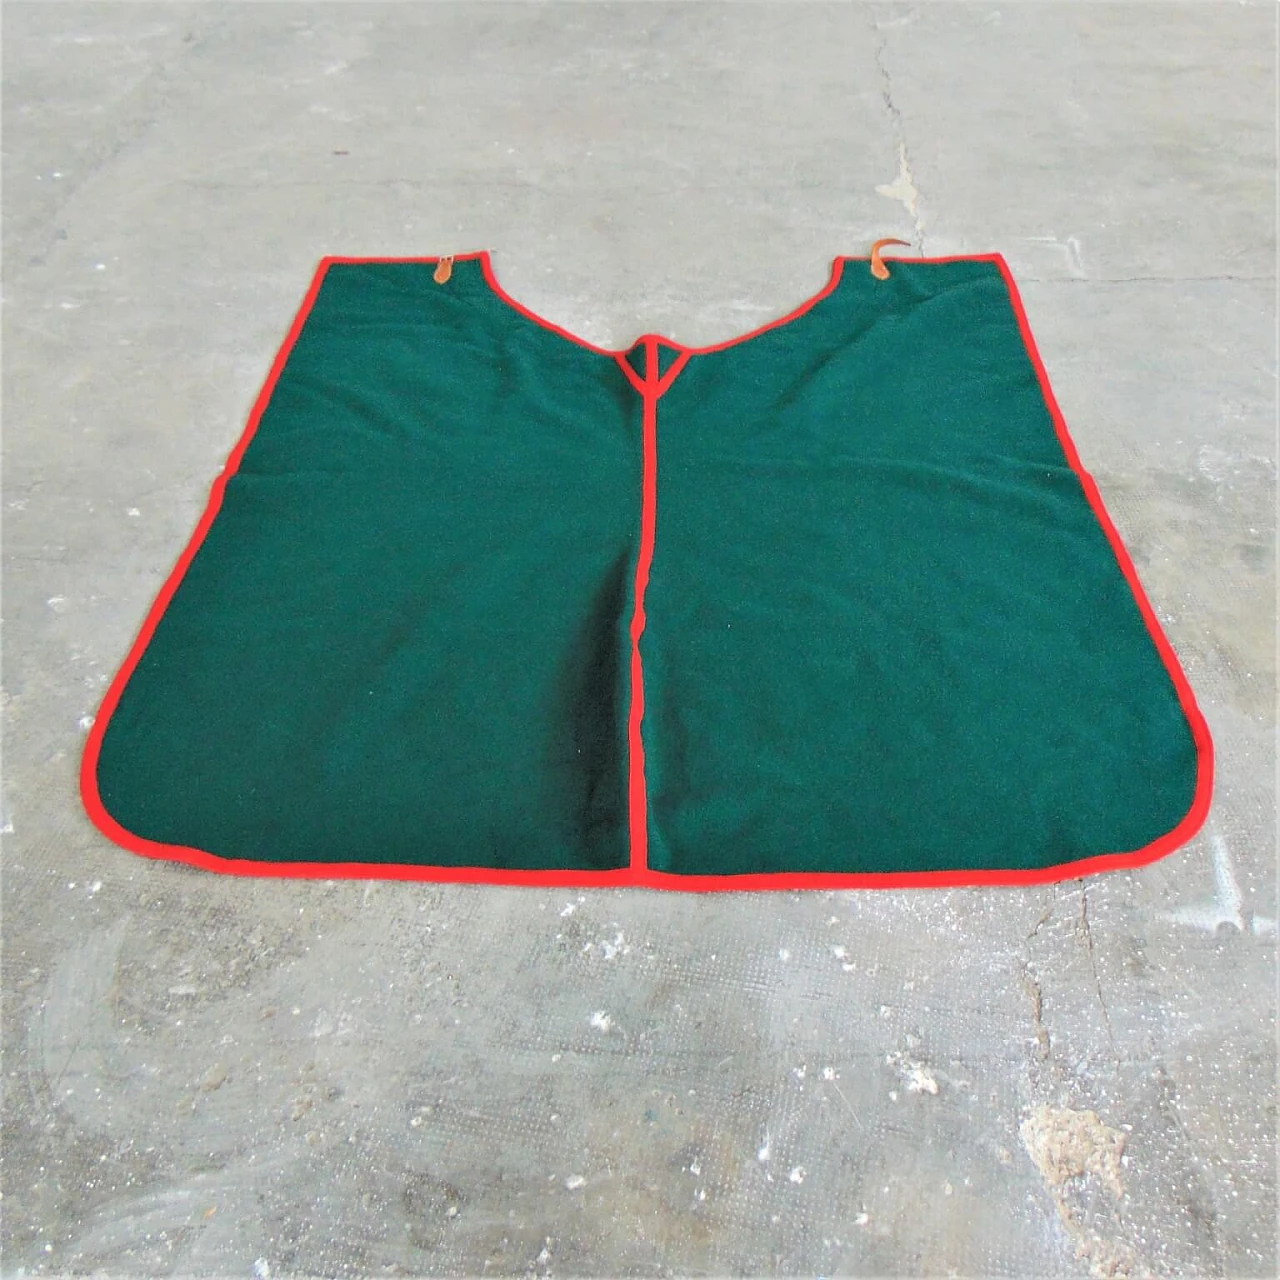 Coperta verde Selleria Pariani, realizzata a mano, pura lana vergine, profili rossi e cuoio, 1980 1071696